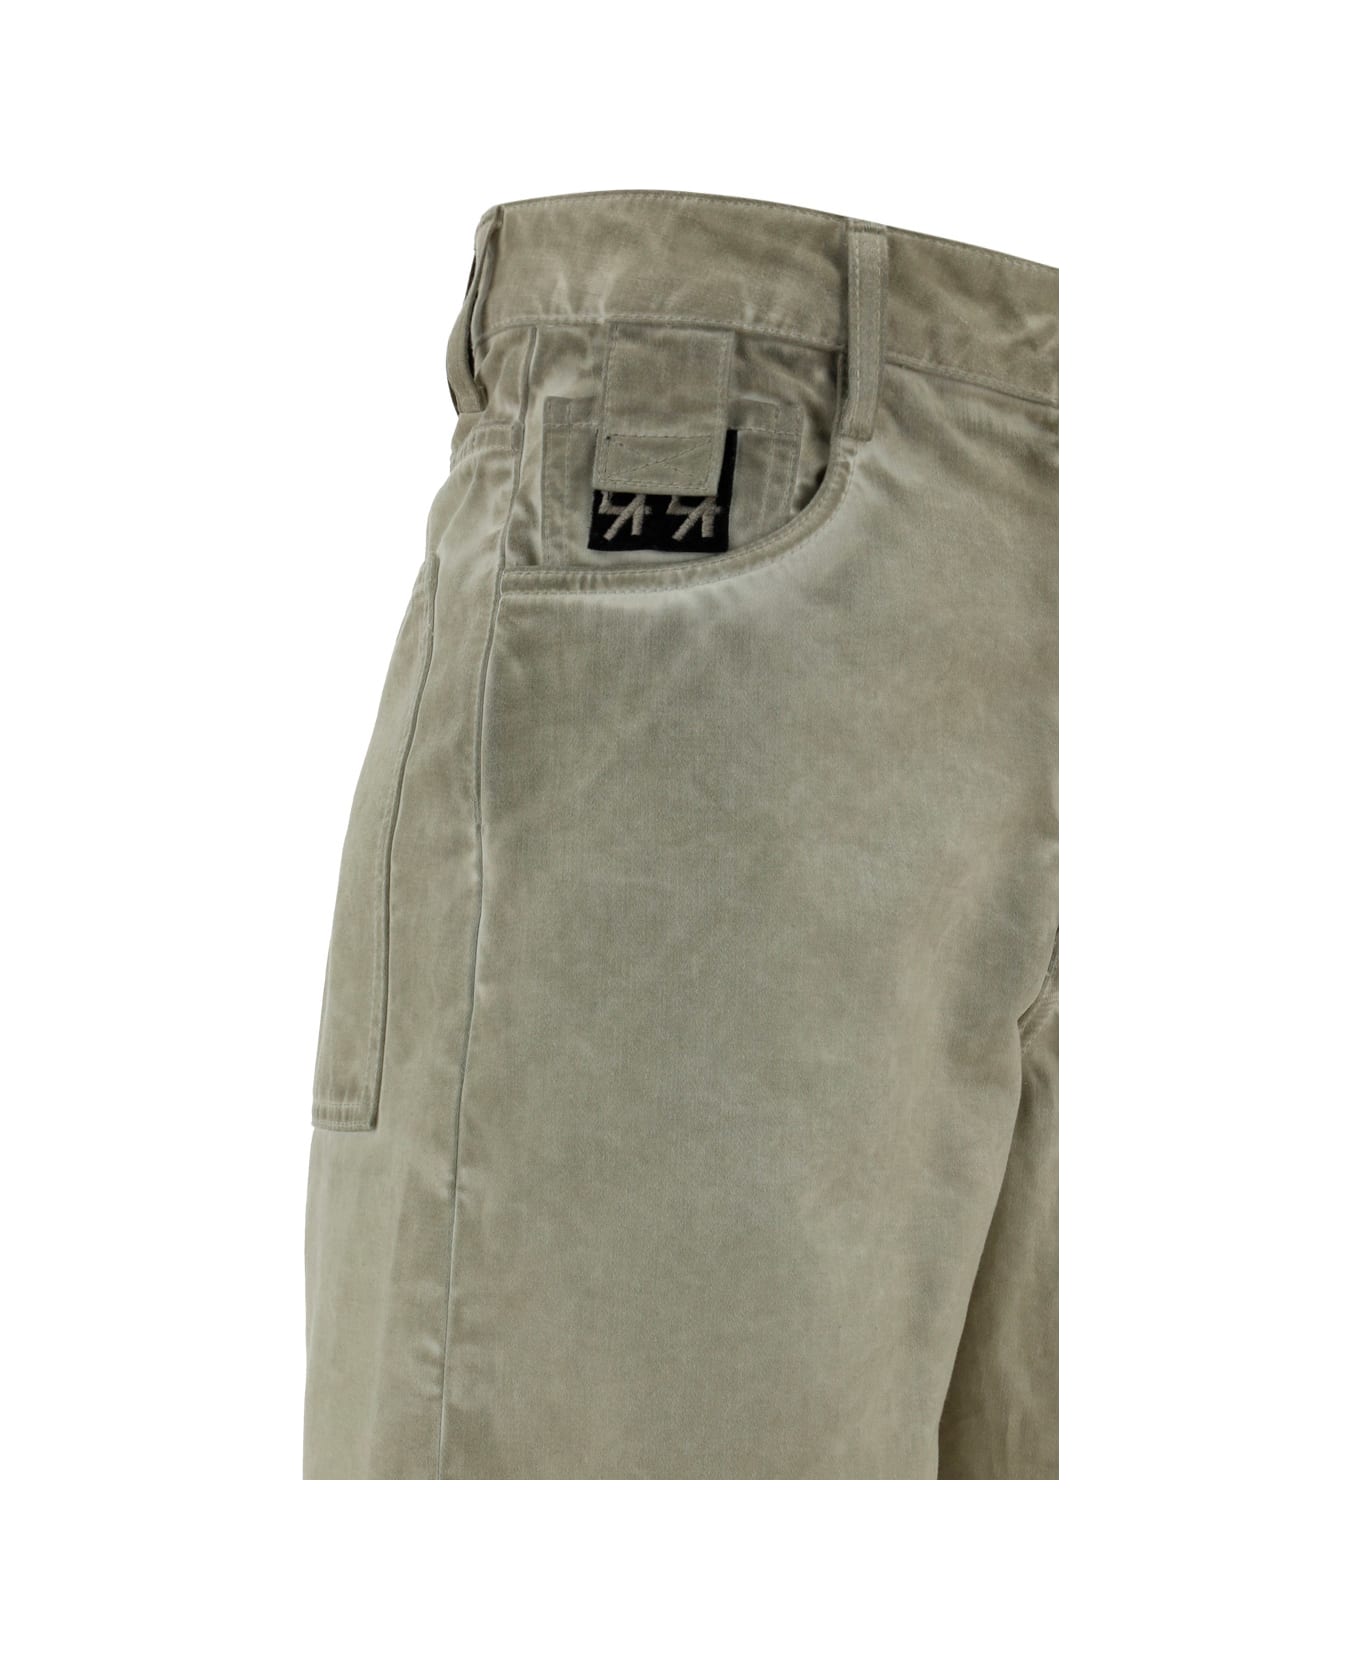 44 Label Group Short Pants - Sabbia